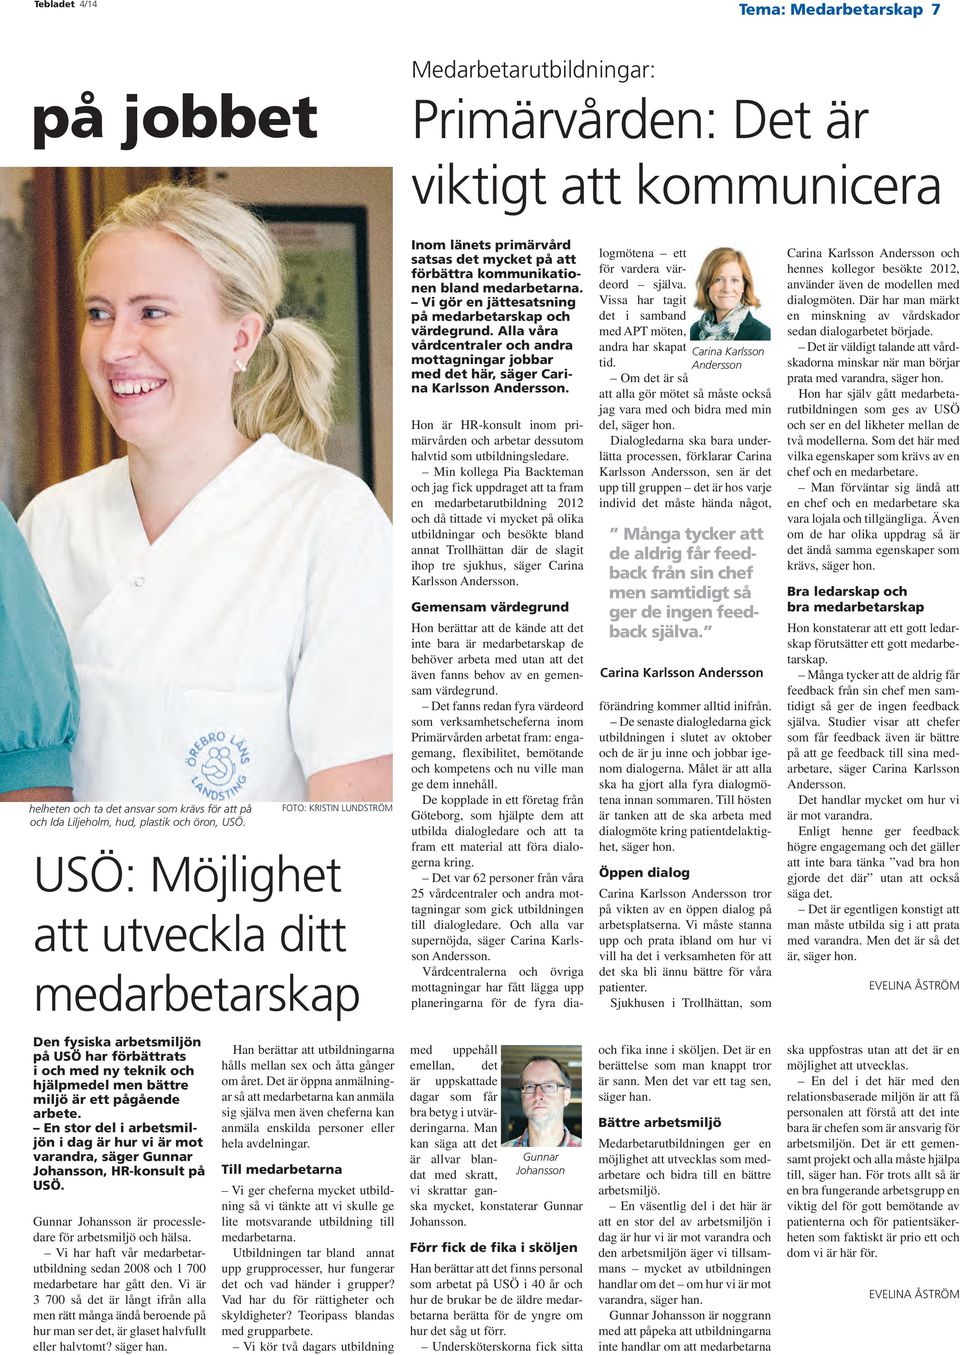 Vi gör en jättesatsning på medarbetarskap och värdegrund. Alla våra vårdcentraler och andra mottagningar jobbar med det här, säger Carina Karlsson Andersson.